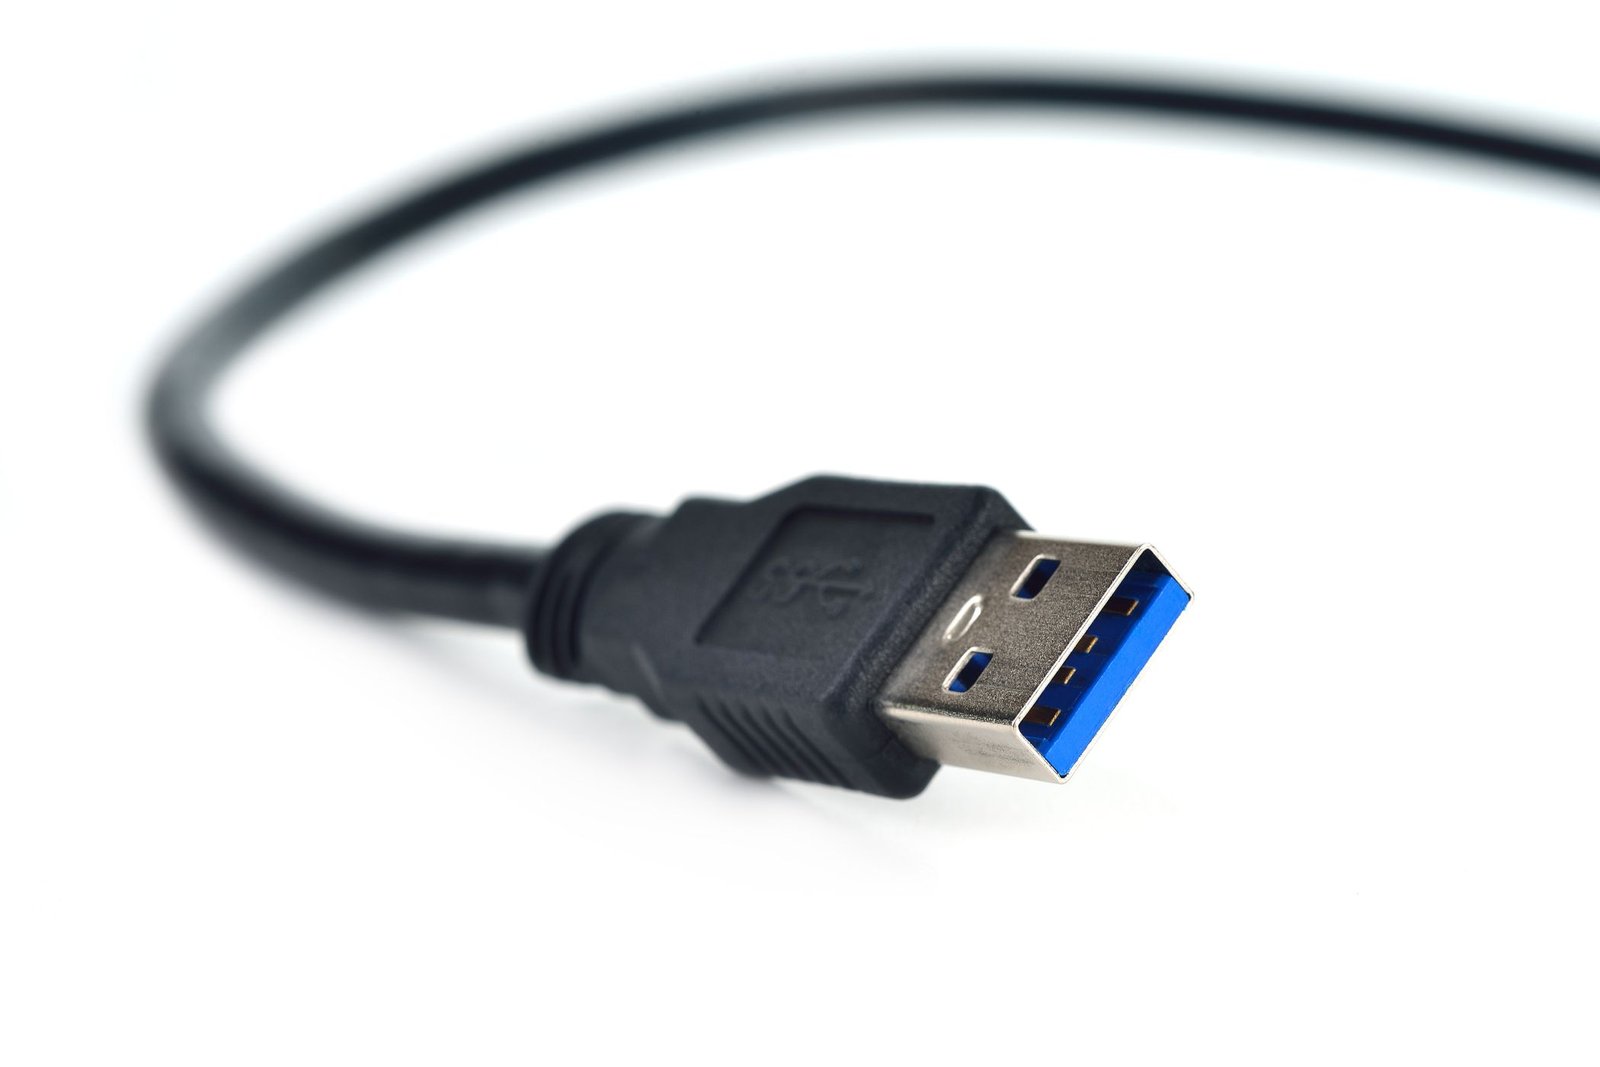 Prise USB de type A isolée sur fond blanc.